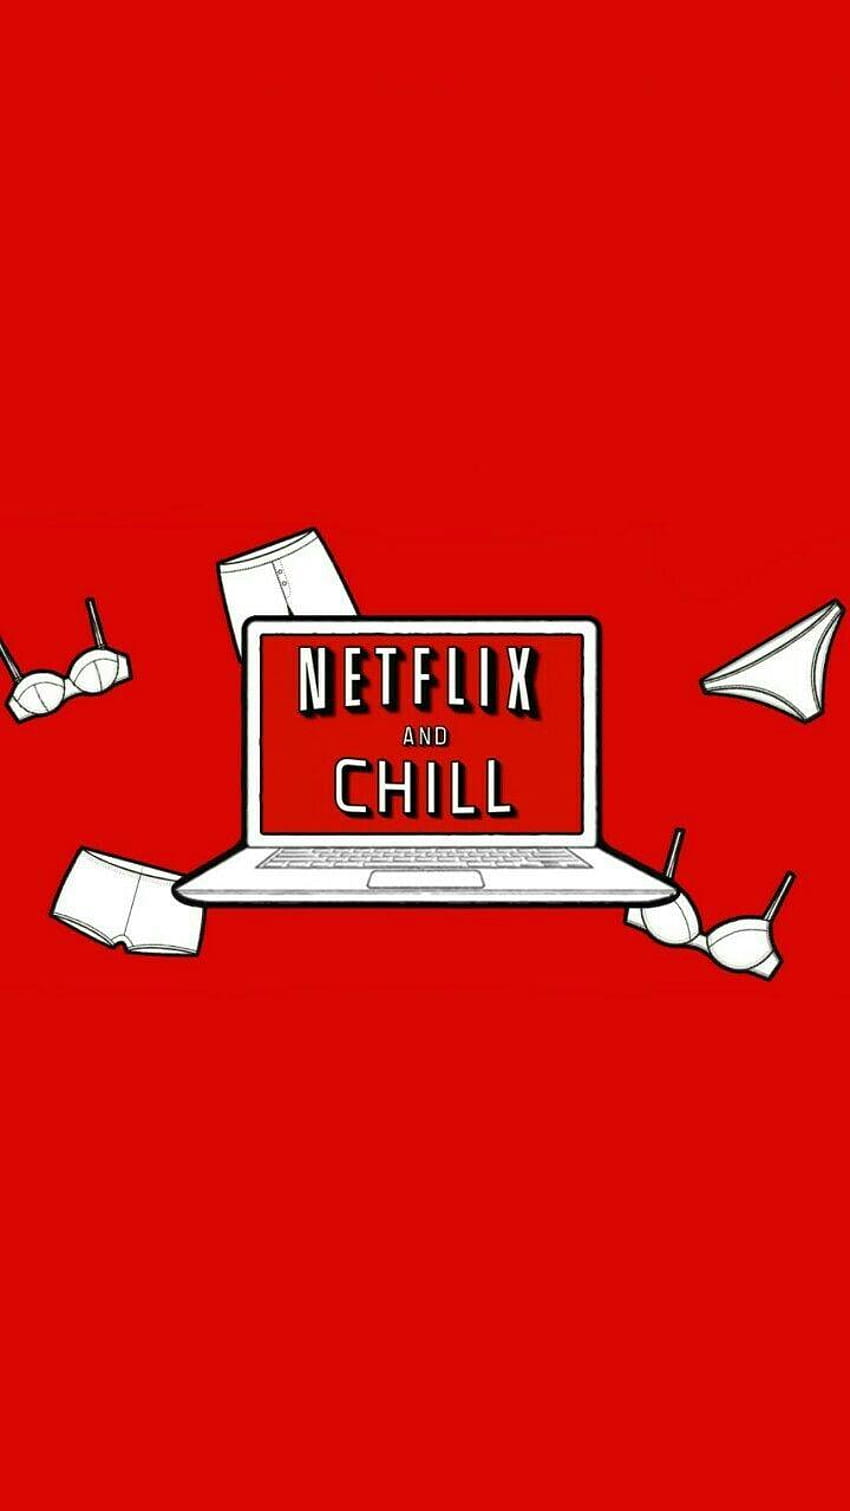 Netflix chill is a popular meme - Netflix